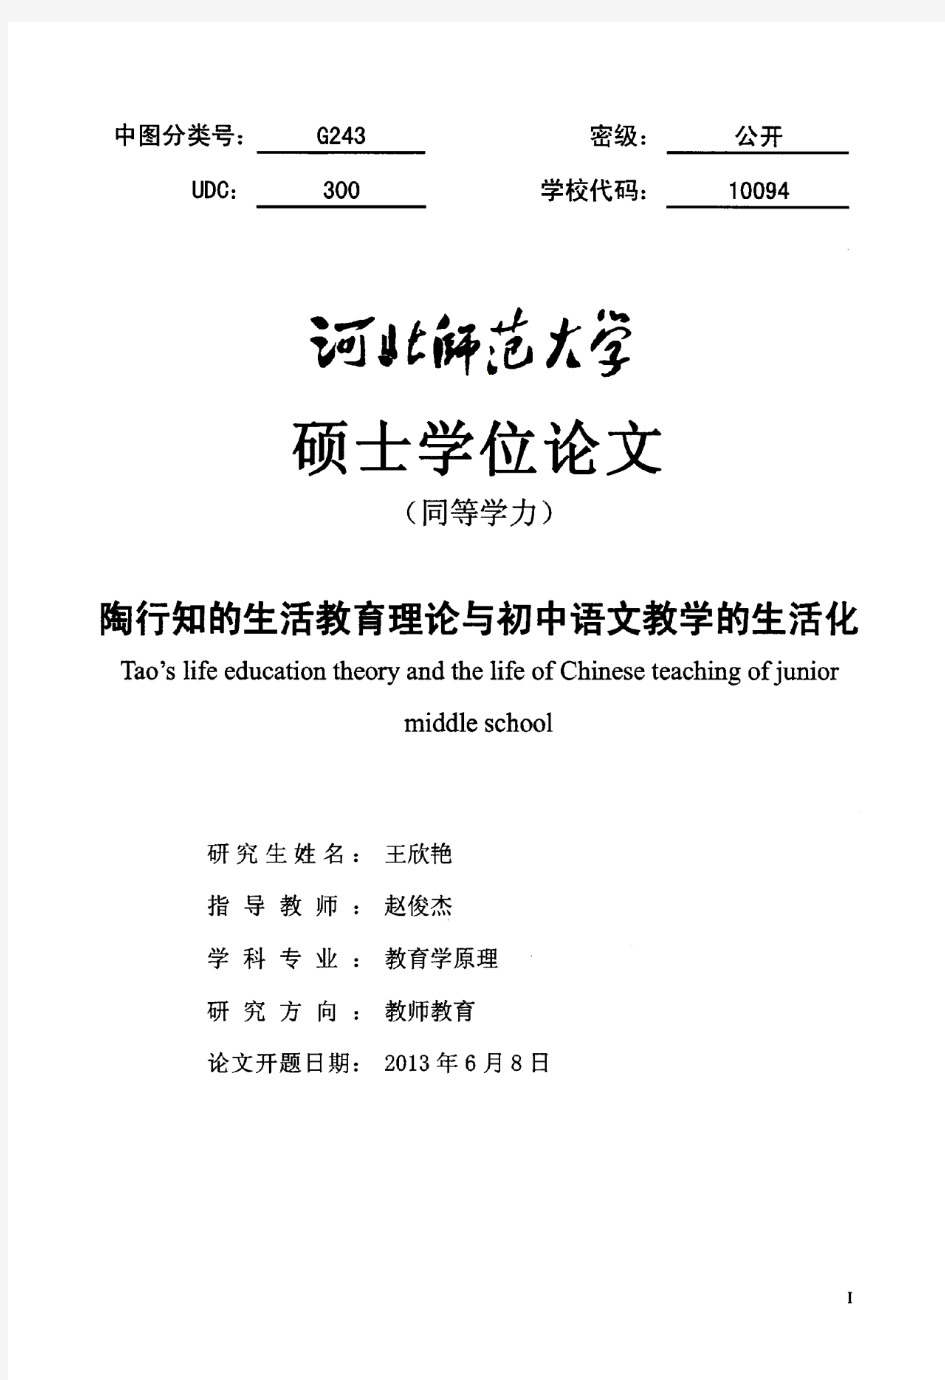 陶行知的生活教育理论与初中语文教学的生活化